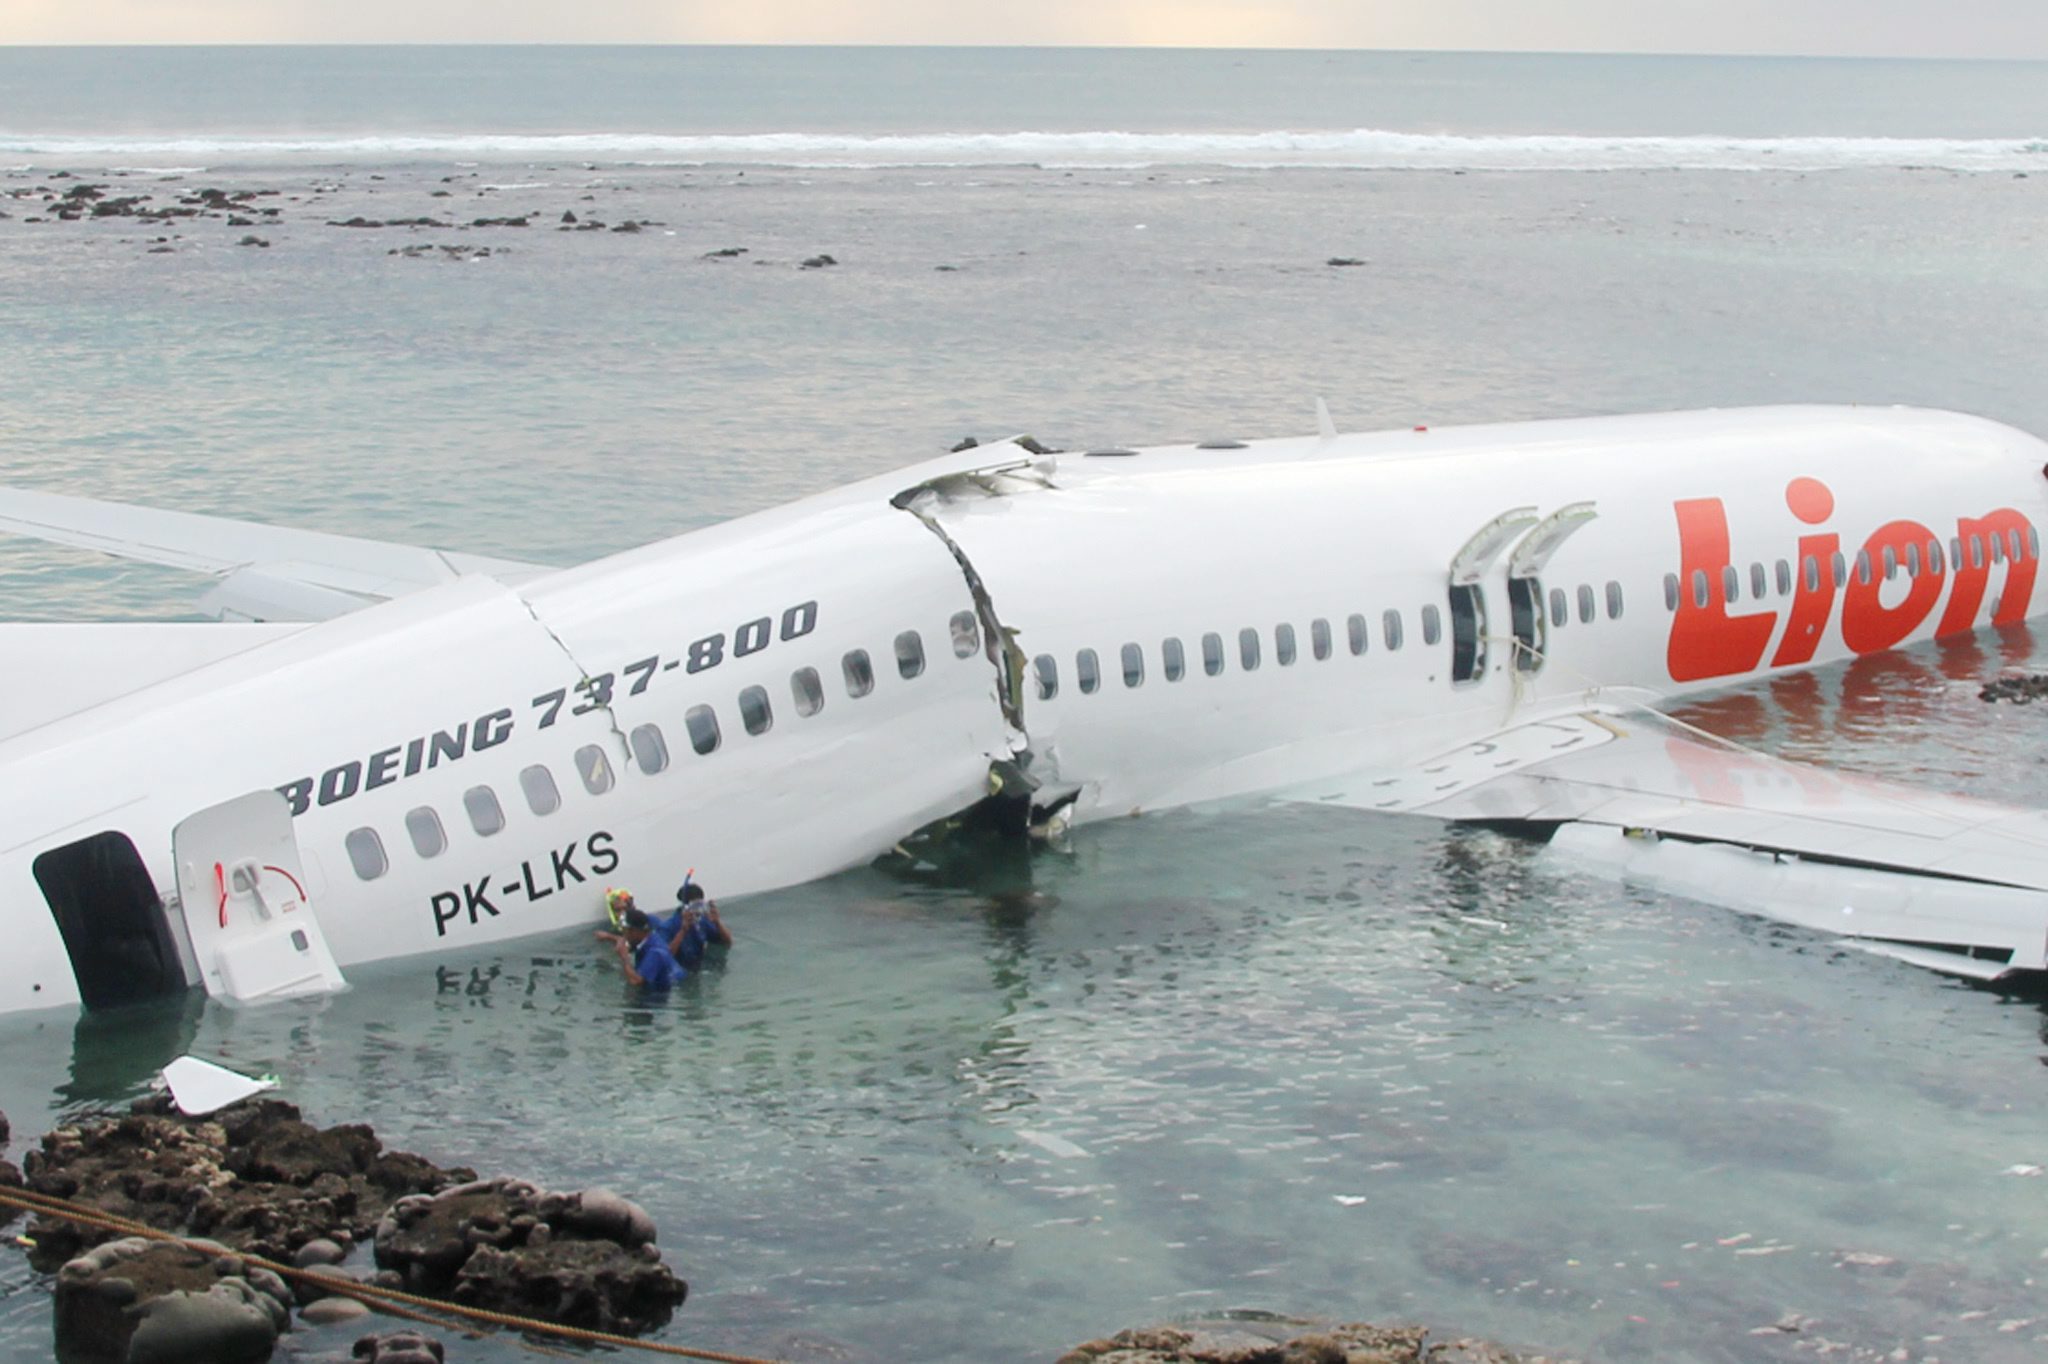 ΗΠΑ: Ταμείο 500 εκατ. δολ. για τις αποζημιώσεις  των δυστυχημάτων με Boeing 737 MAX